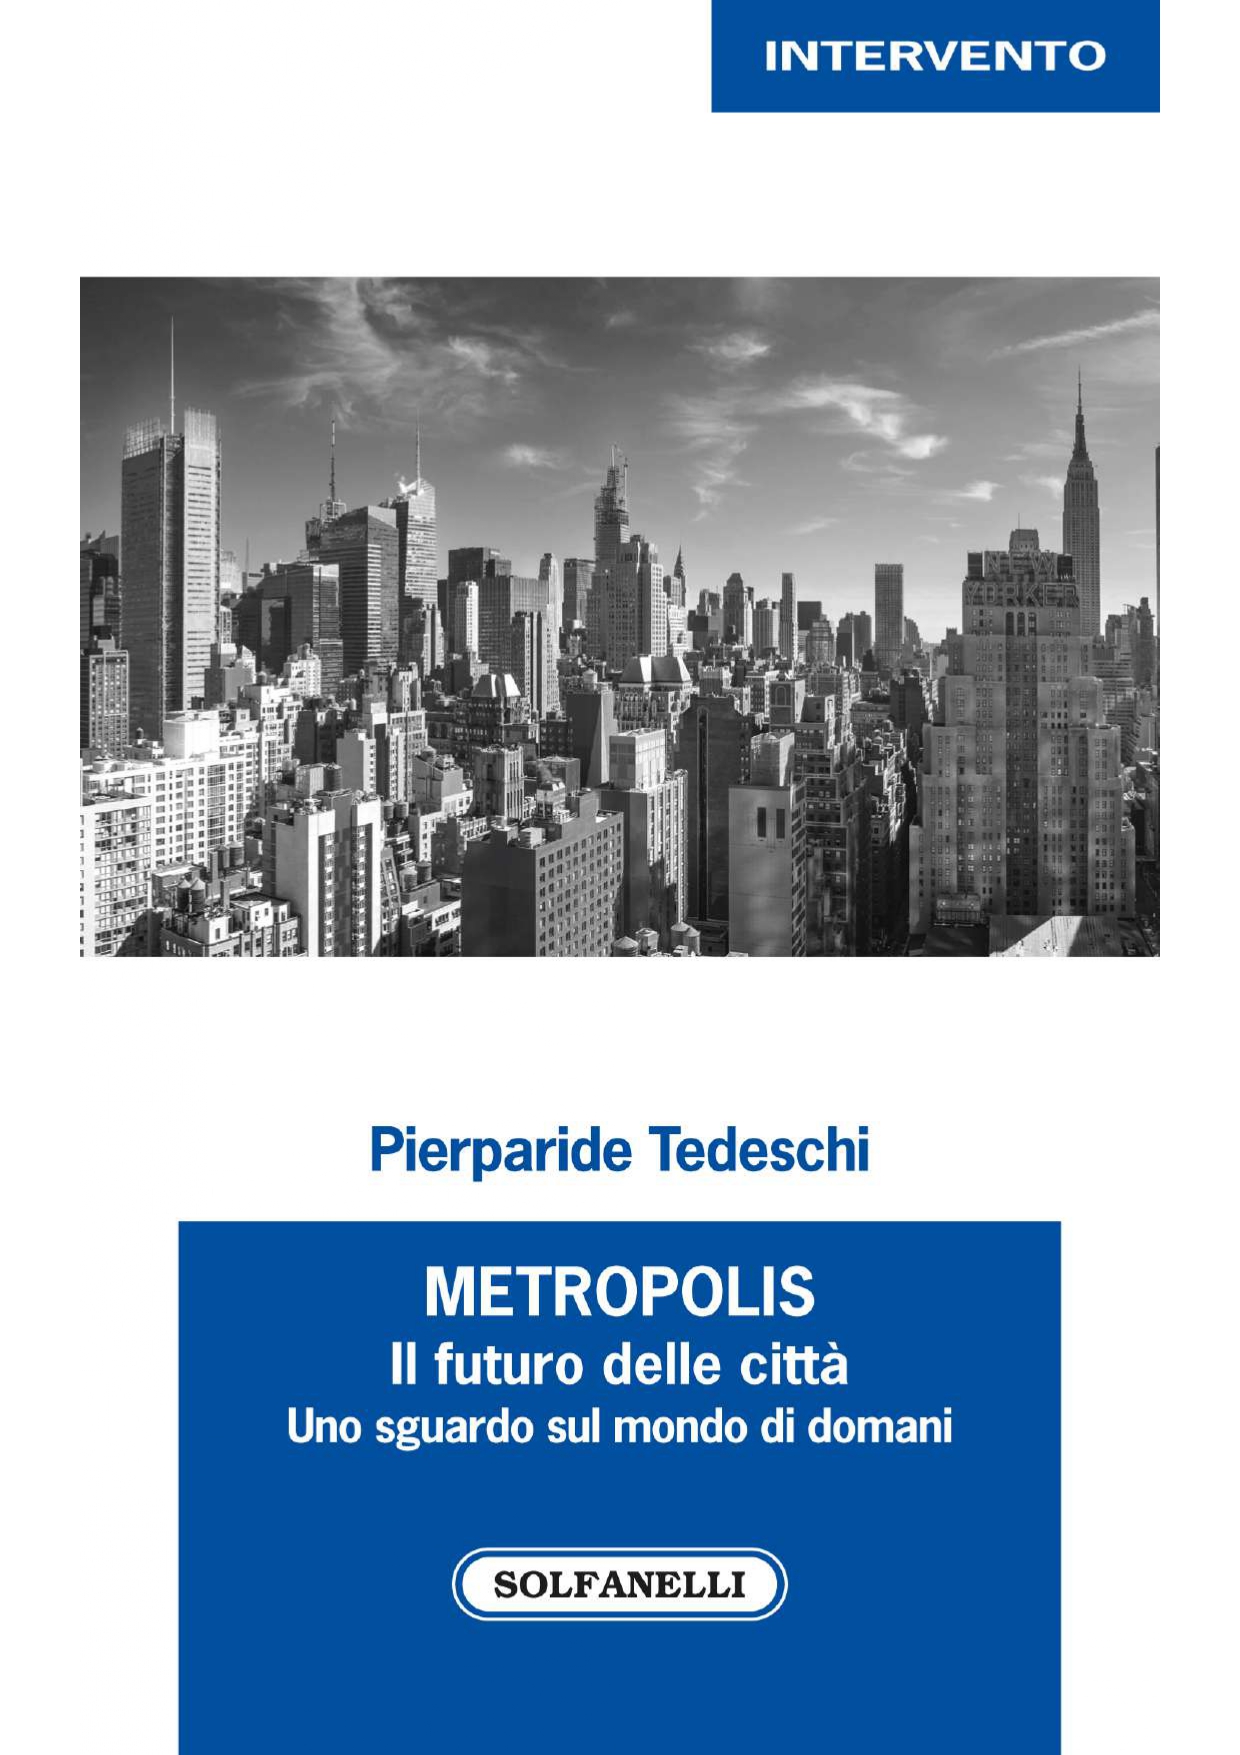 METROPOLIS Il futuro delle città, uno sguardo sul mondo di doman